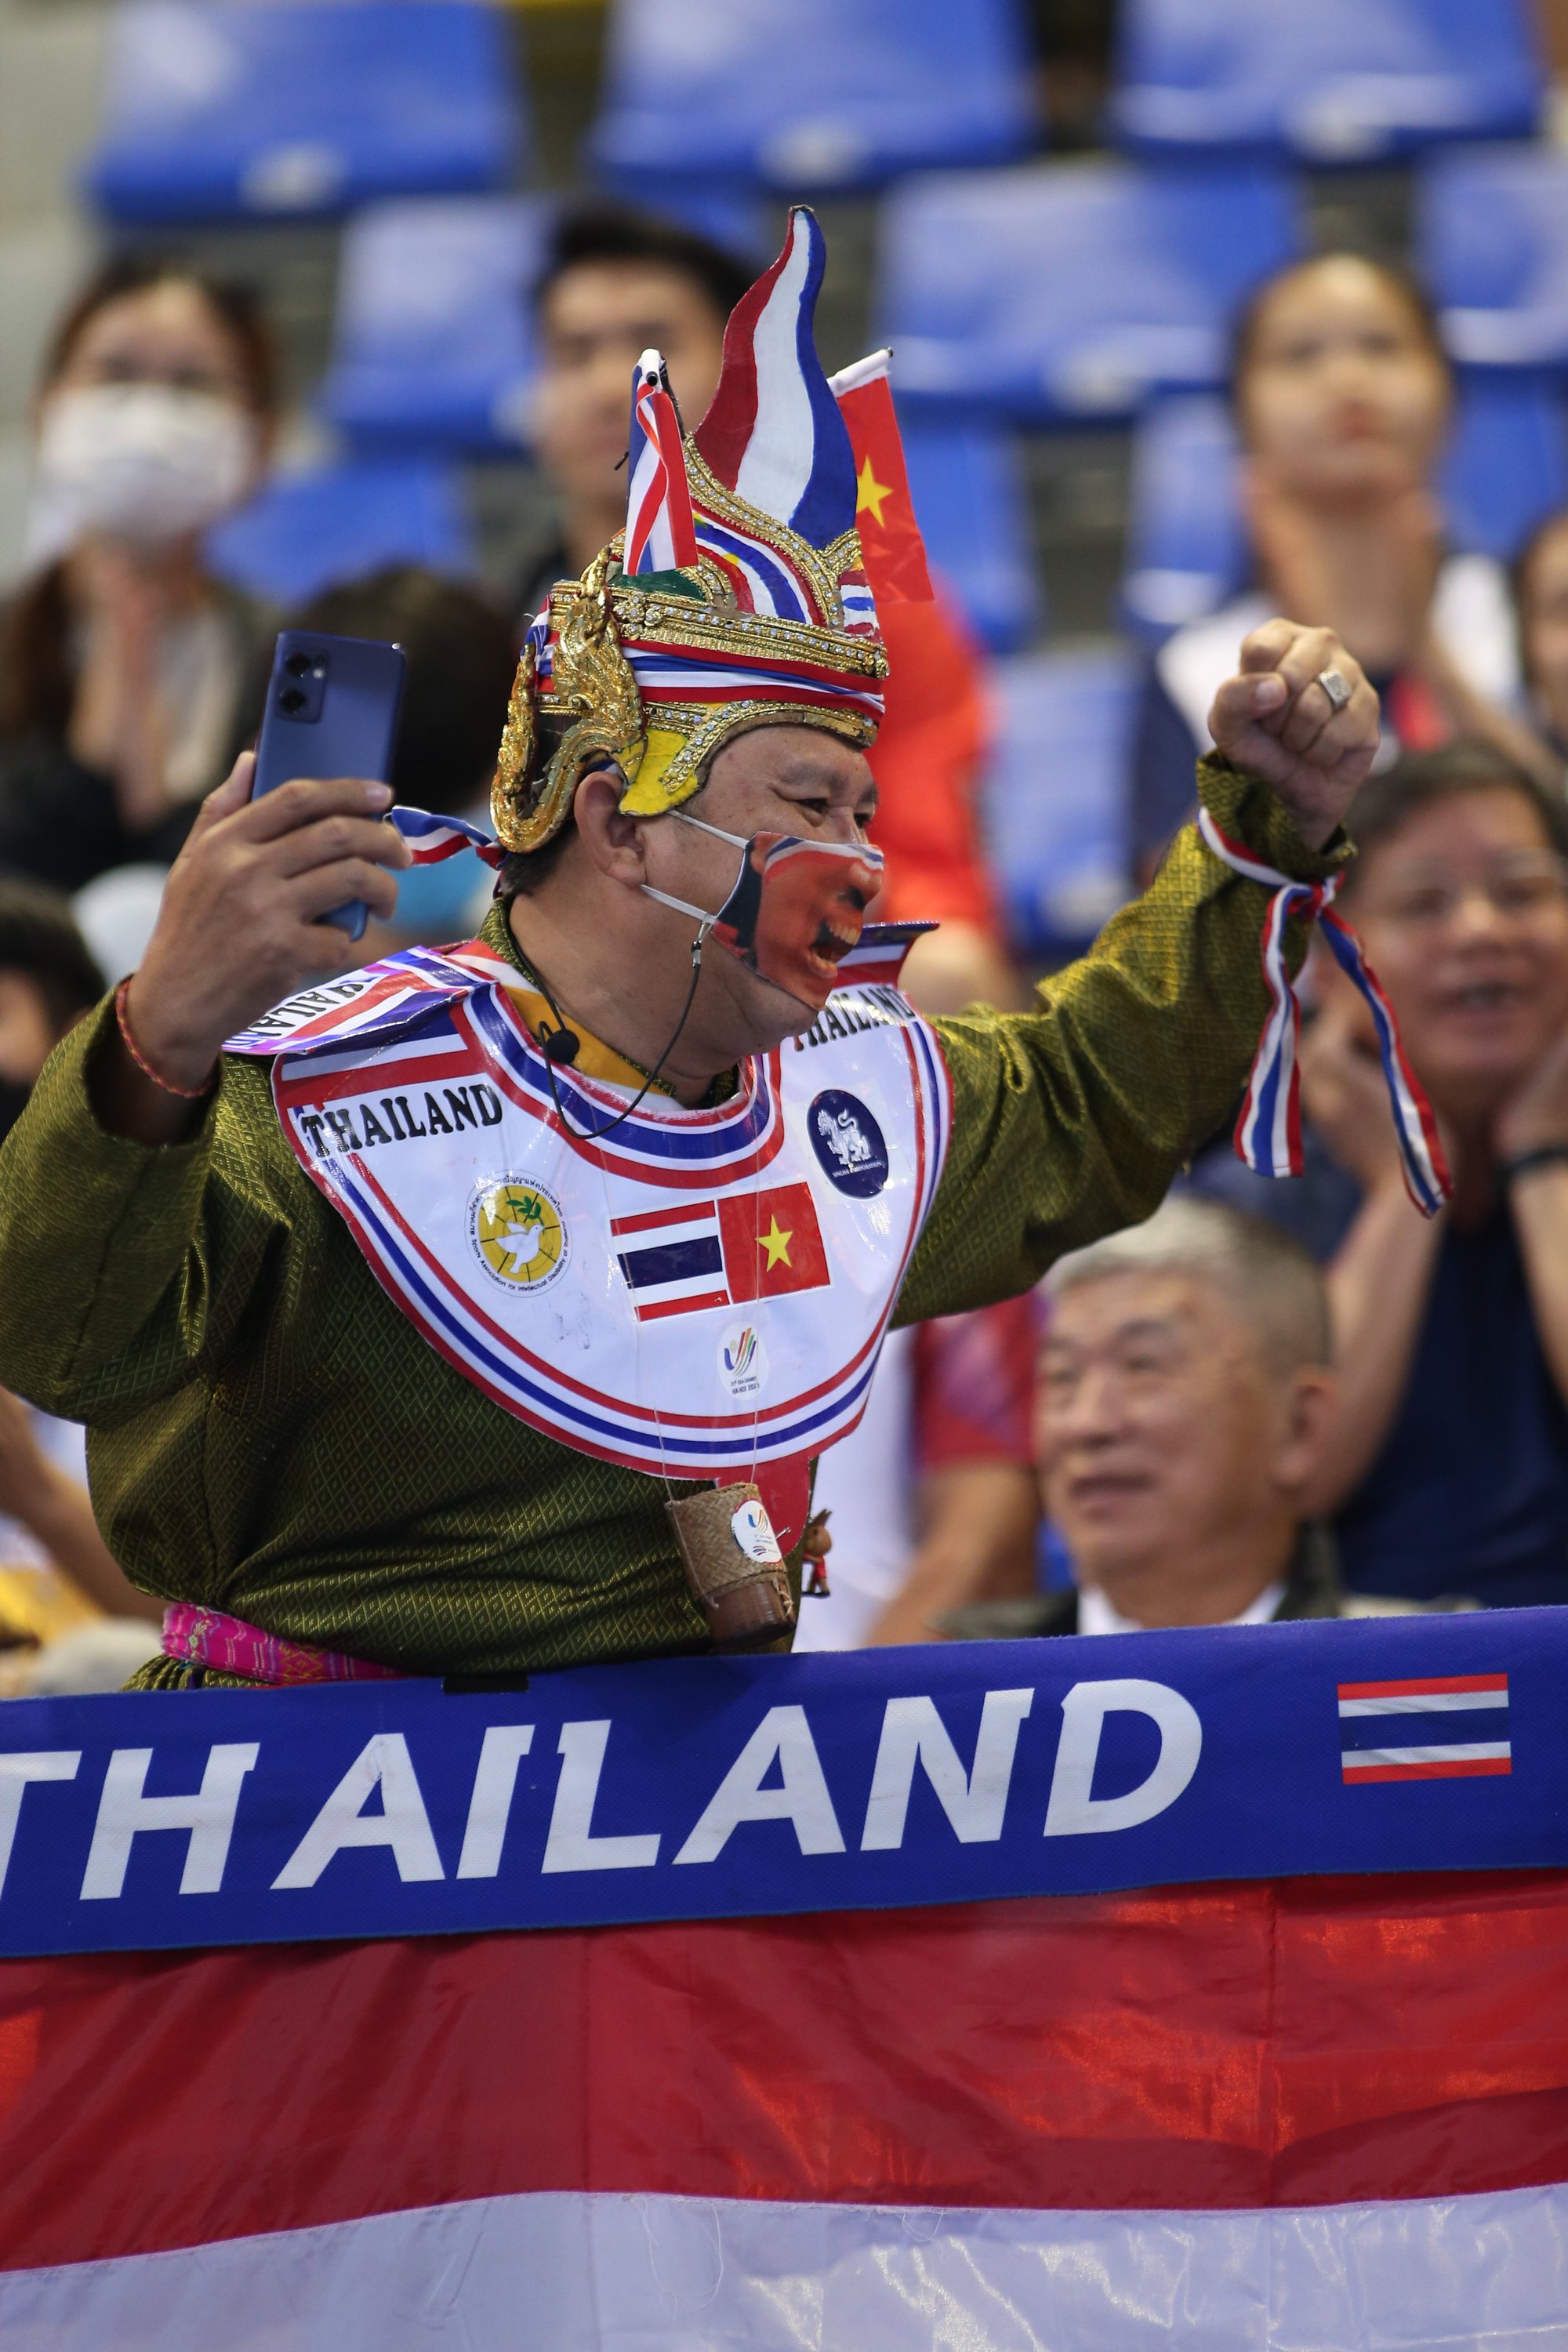 Dù chưa thắng được đối thủ Thái Lan, nhưng đội tuyển bóng chuyền nữ Việt Nam vẫn được người hâm mộ yêu mến và ủng hộ. Cùng xem những hình ảnh đầy cảm xúc và kỳ thú khi các cô gái Việt Nam chơi trên sân.